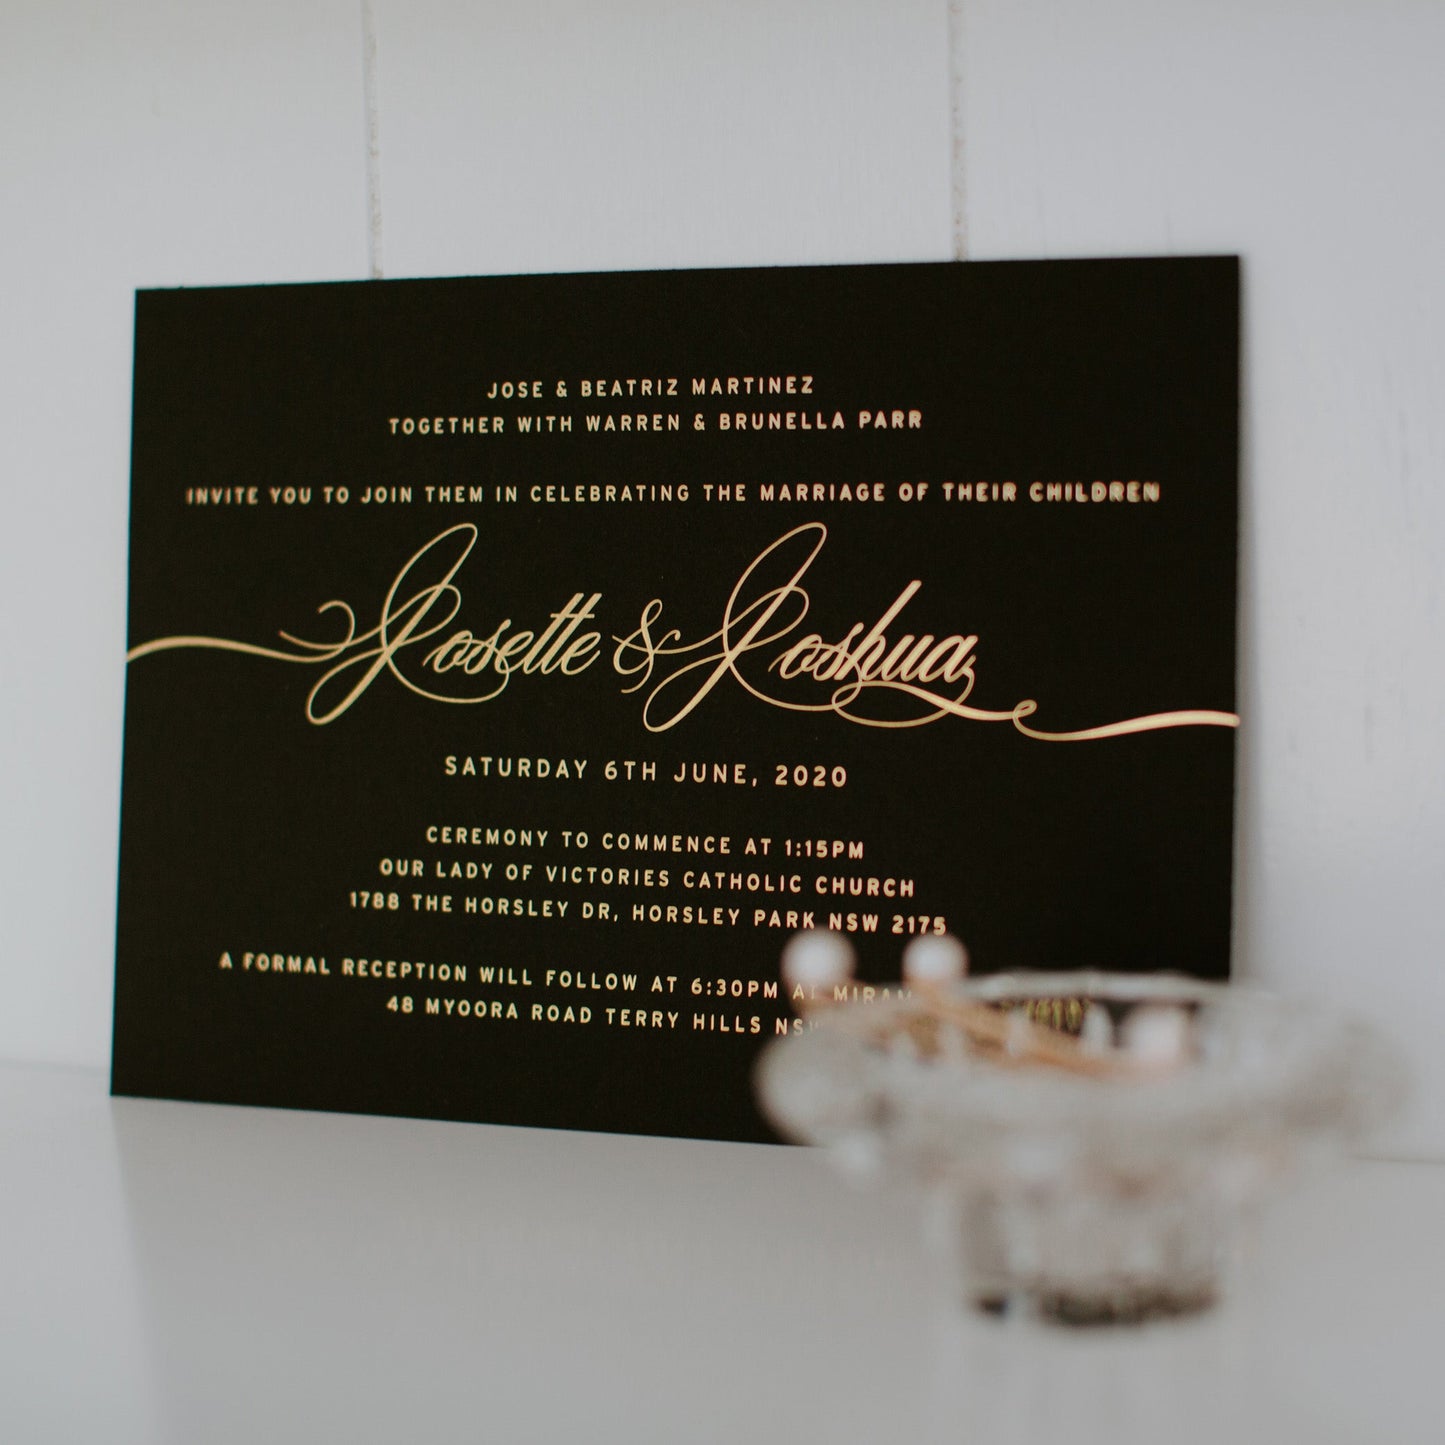 Josette and Joshua Invitation